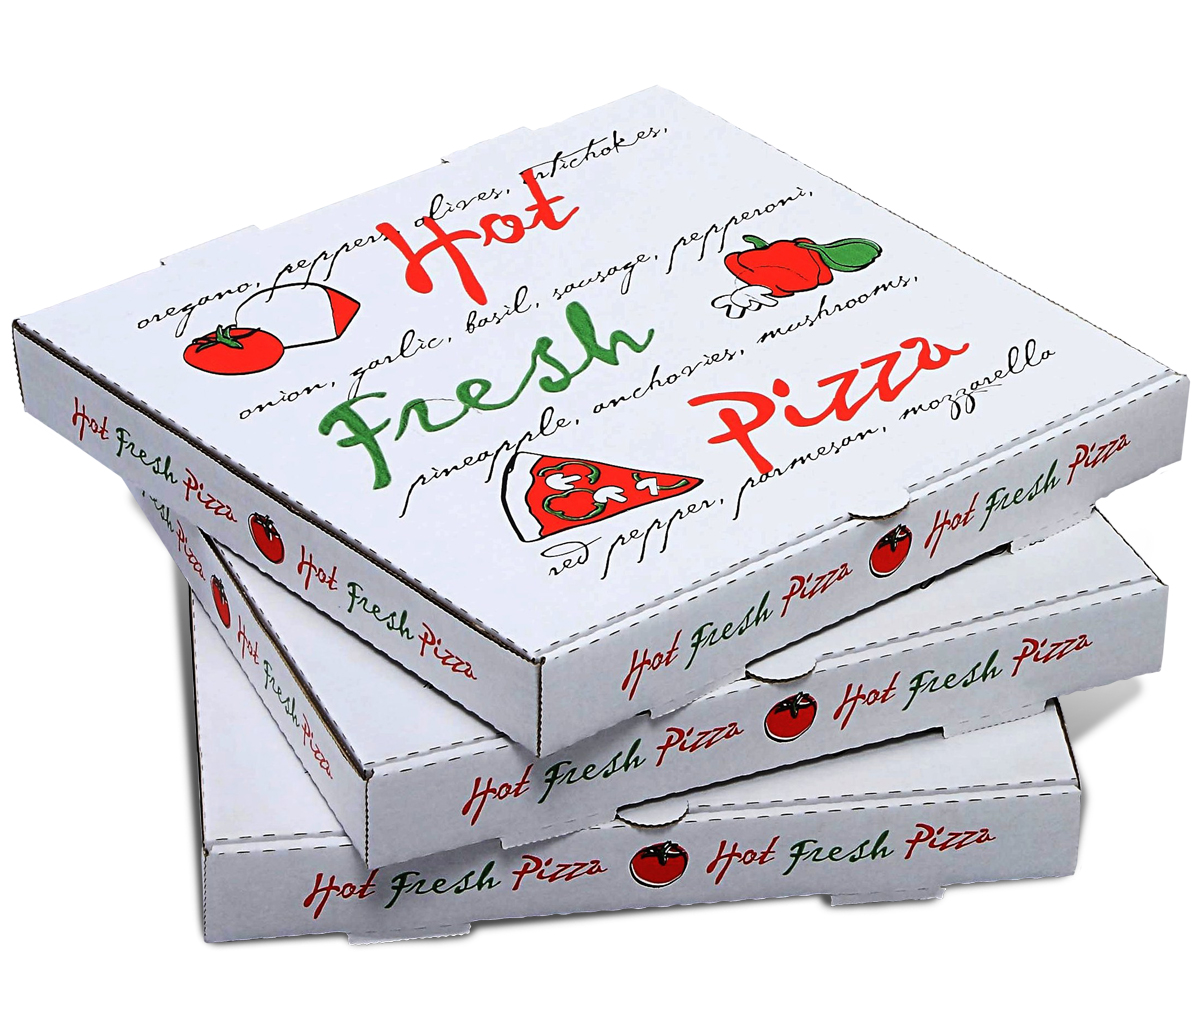 In hộp giấy đựng pizza giá rẻ